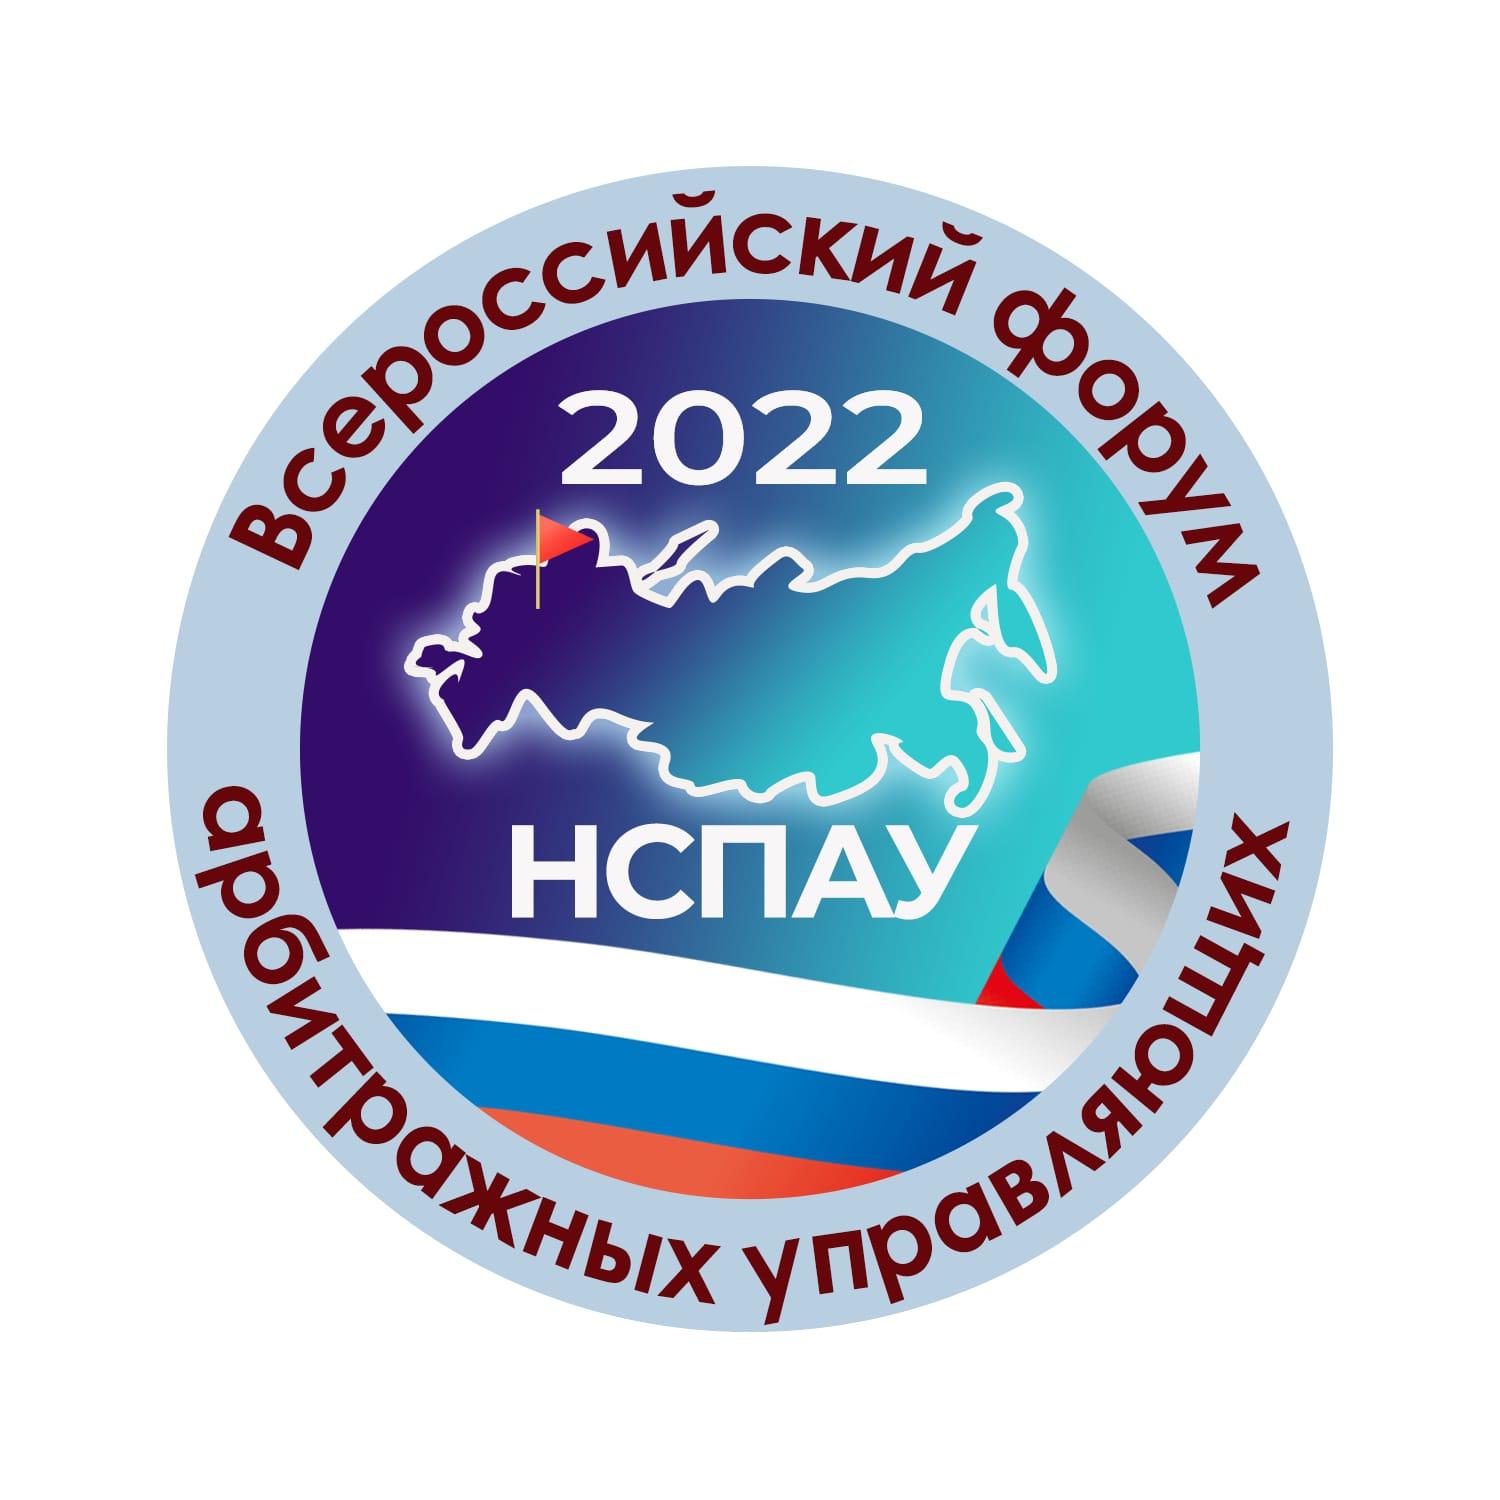 Вы сейчас просматриваете Стартовала регистрация на Всероссийский форум арбитражных управляющих 2022!